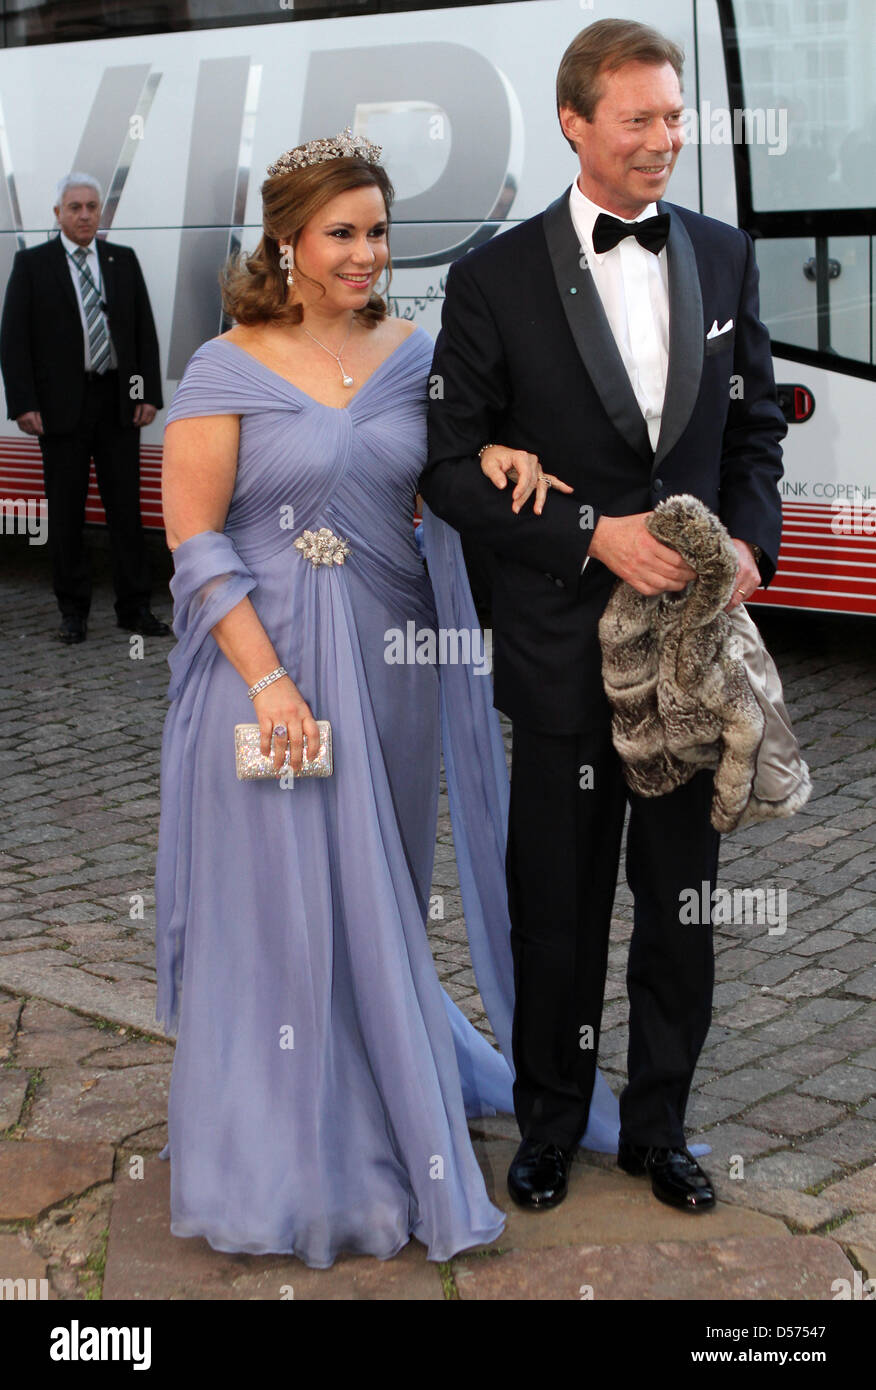 Le Grand-Duc Henri et la Grande-Duchesse Maria Teresa de Luxembourg arrivent au dîner de gala à l'occasion de la célébration du 70e anniversaire de la reine Margrethe du Danemark, palais Fredensborg, Danemark, 16 avril 2010. Photo : Albert Nieboer (Pays-Bas) Banque D'Images